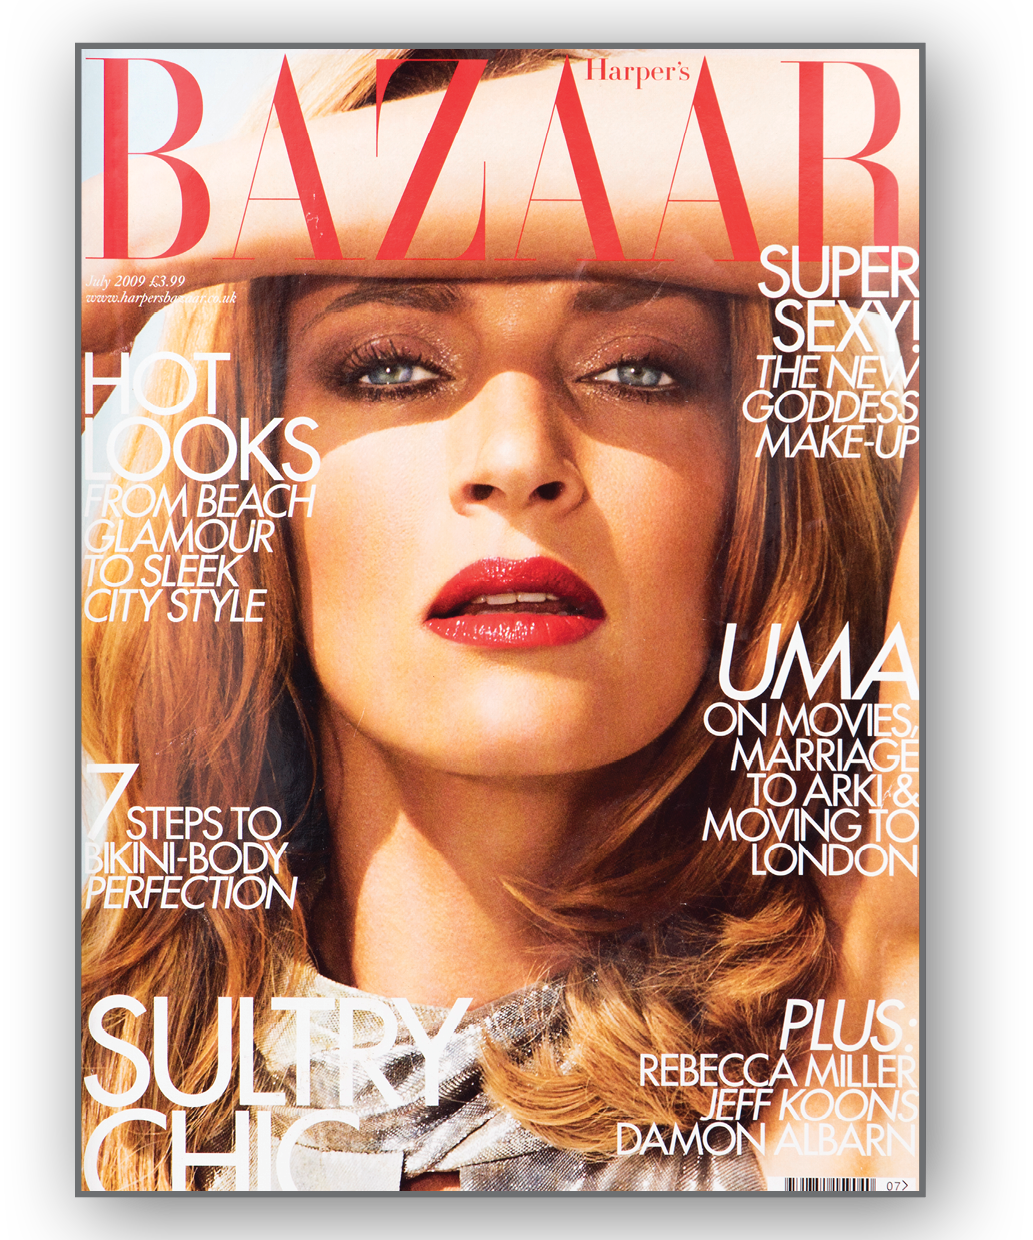 Harper's Bazaar magazine